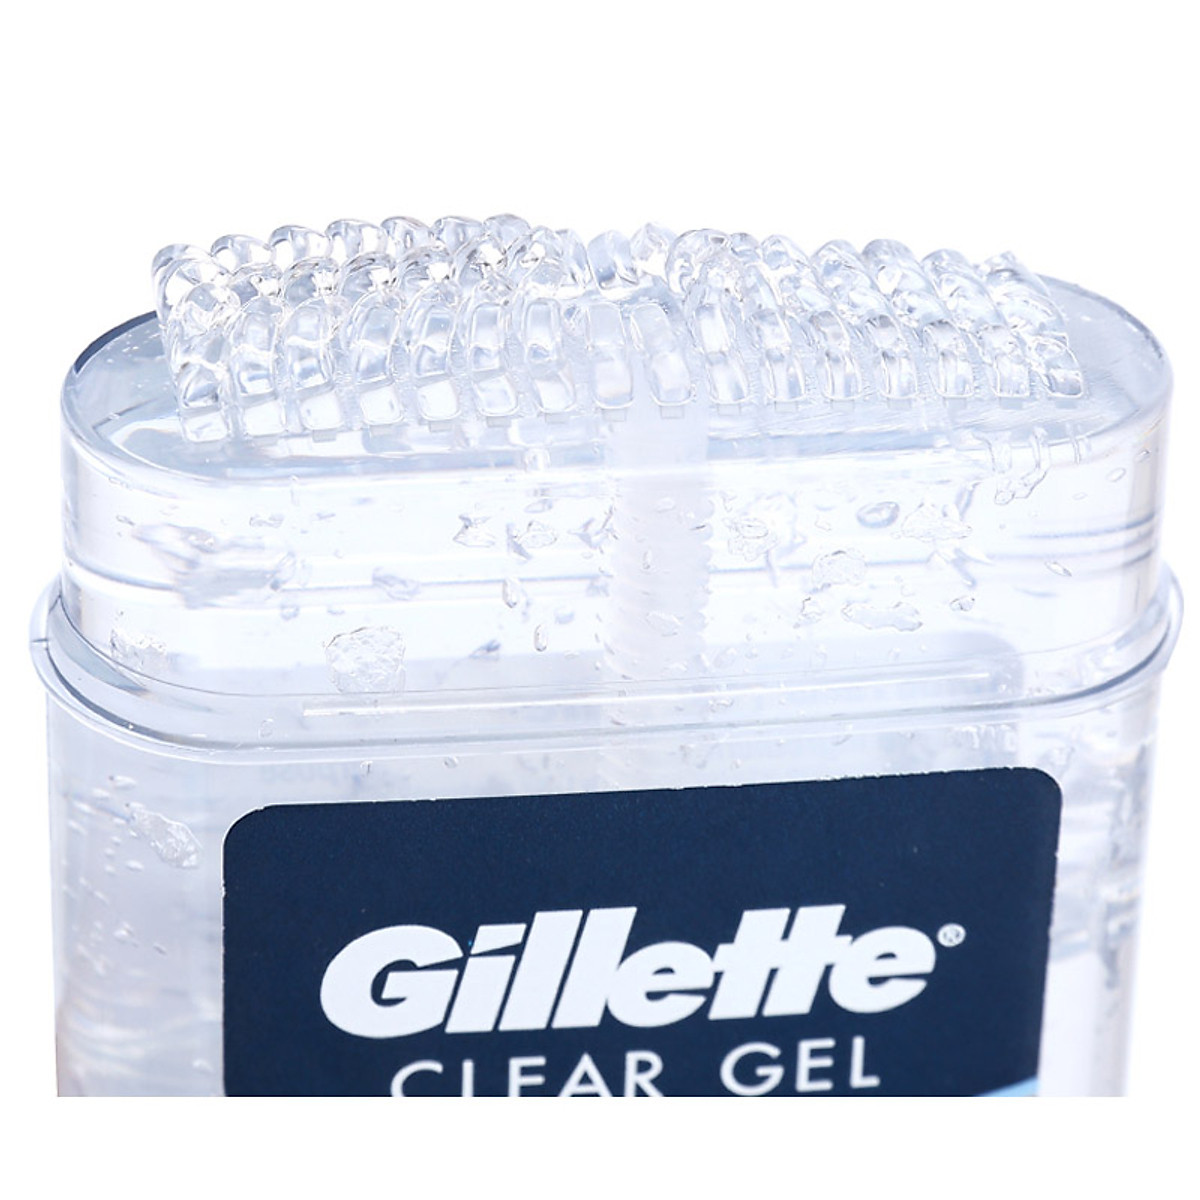 Mua Lăn Khử Mùi Gillette Dạng Gel Cool Wave Clear Gel 107g tại Mỹ phẩm Cosmetic | Tiki